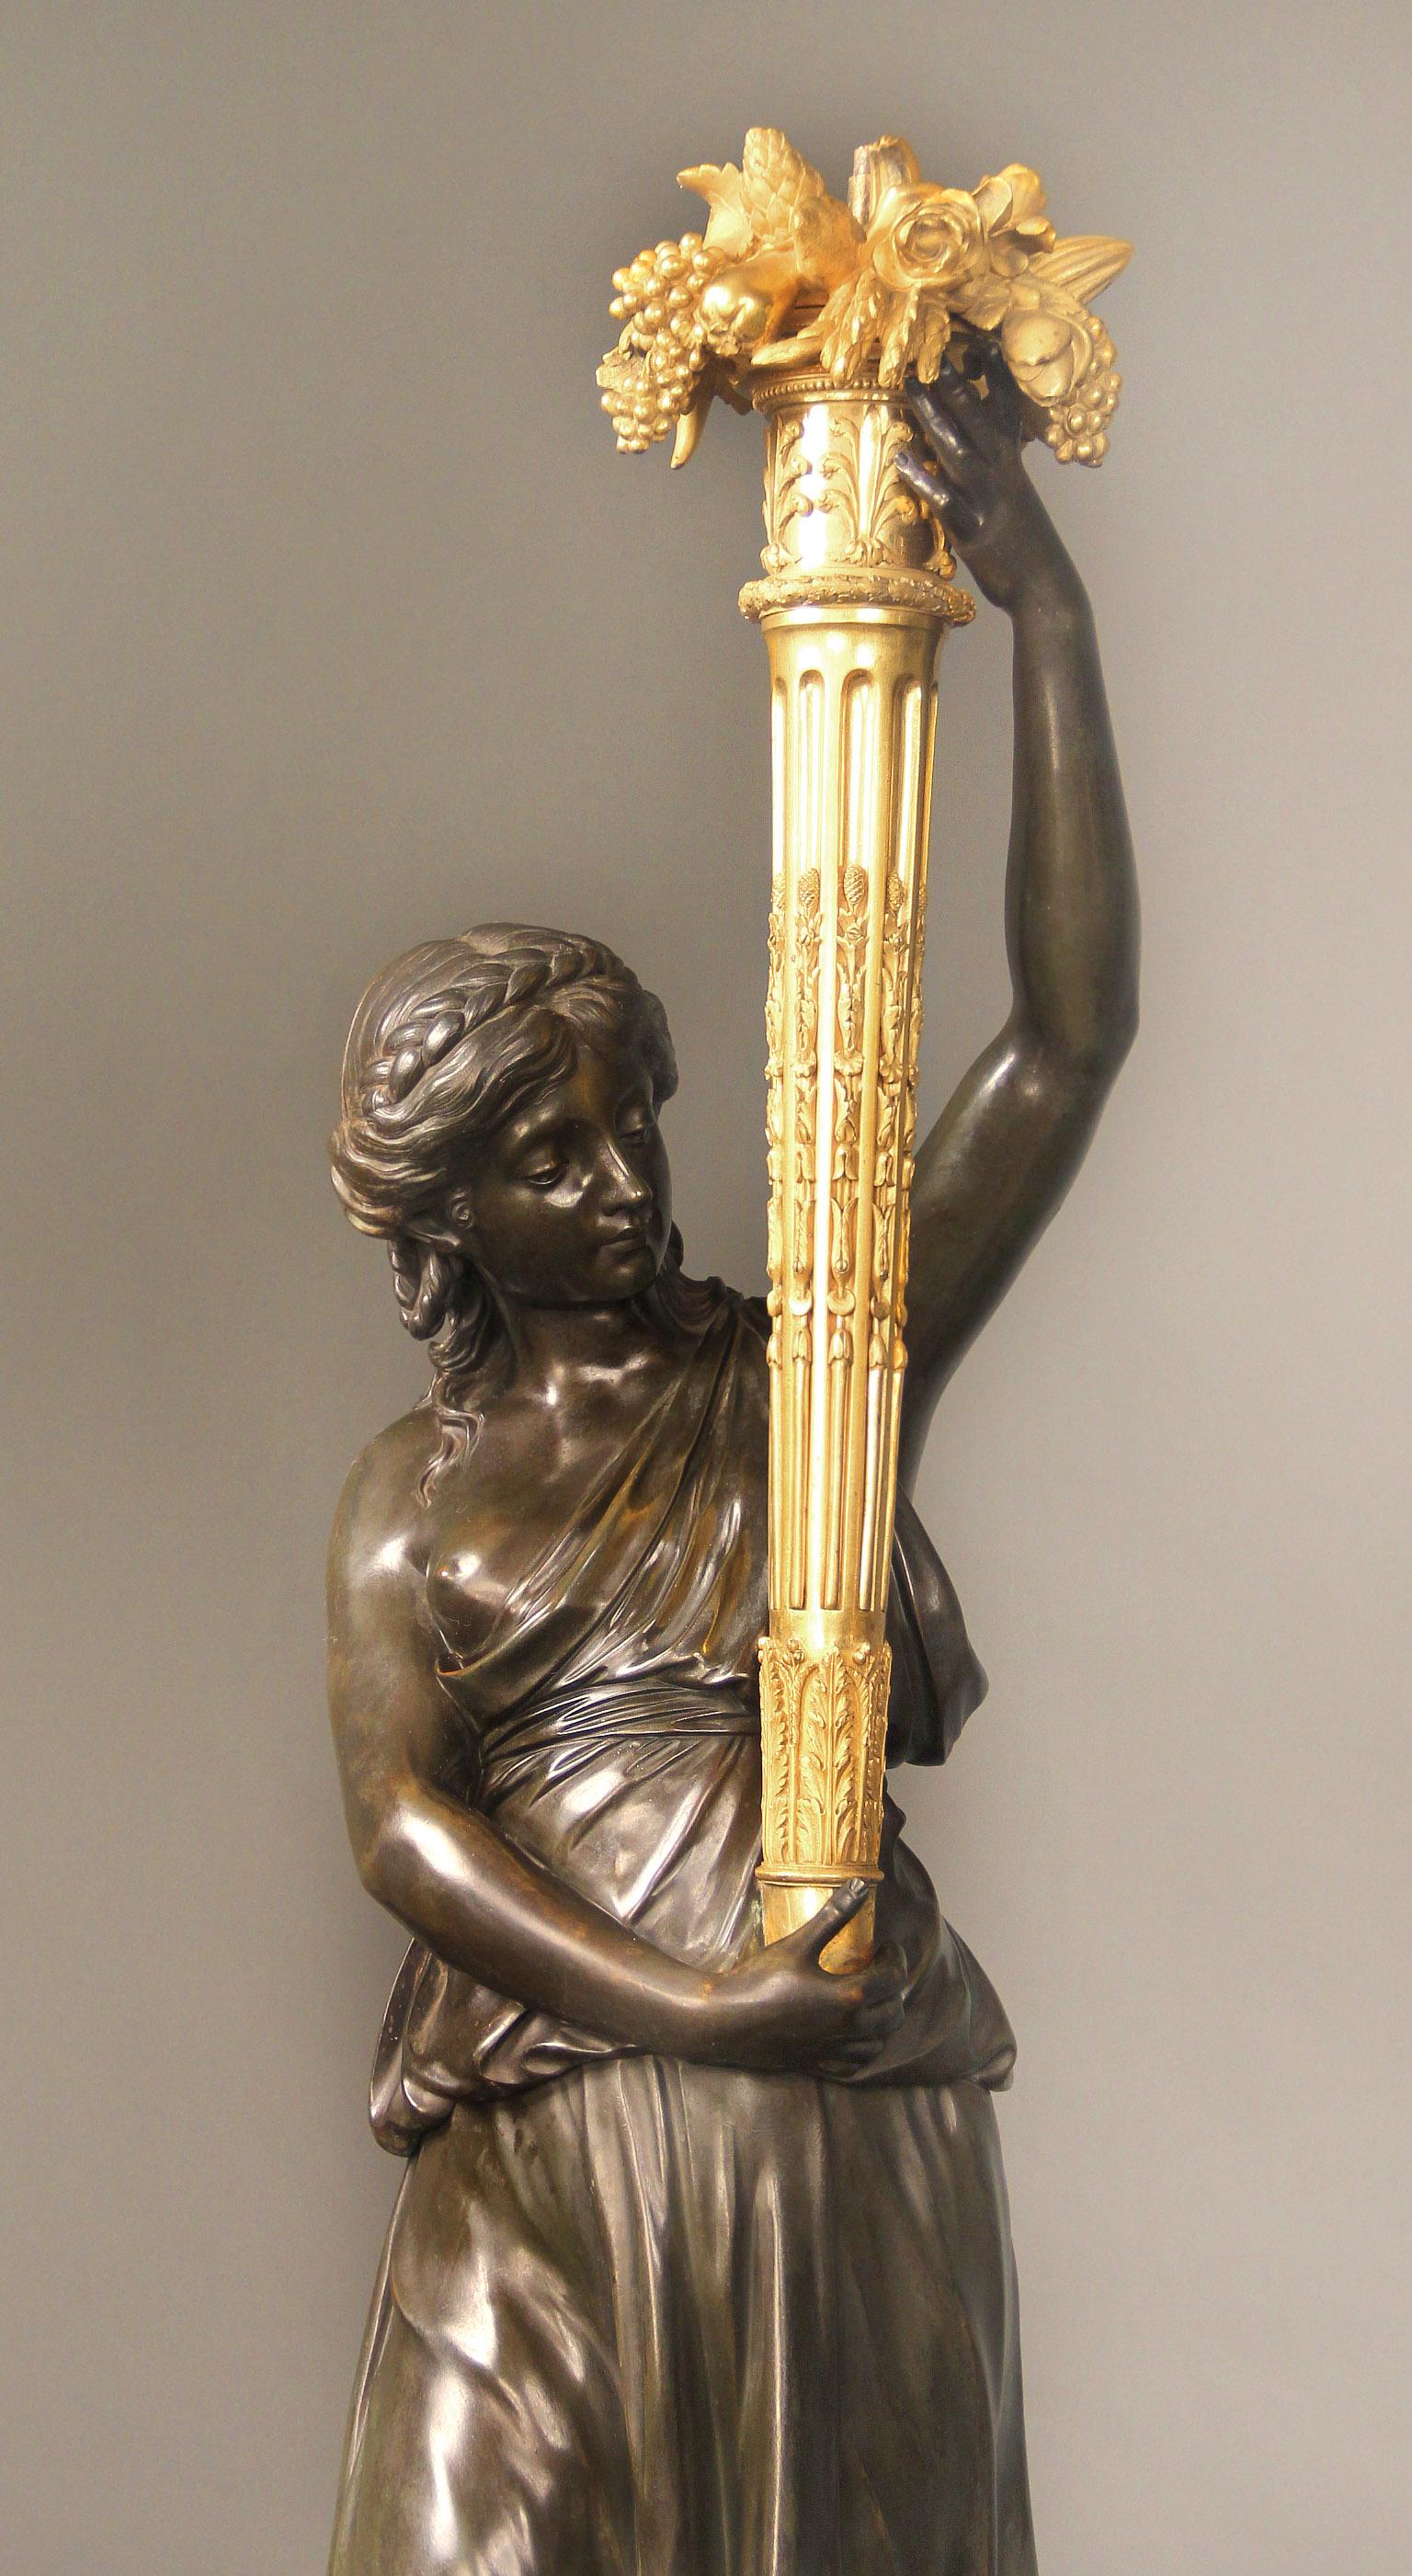 Paire de candélabres figuratifs de qualité muséale en bronze doré et patiné de la fin du XIXe siècle par Henry Dasson.

Henry Dasson

Chacune d'elles représente une beauté légèrement vêtue tenant en l'air une torchère dorée décorée de fruits, de